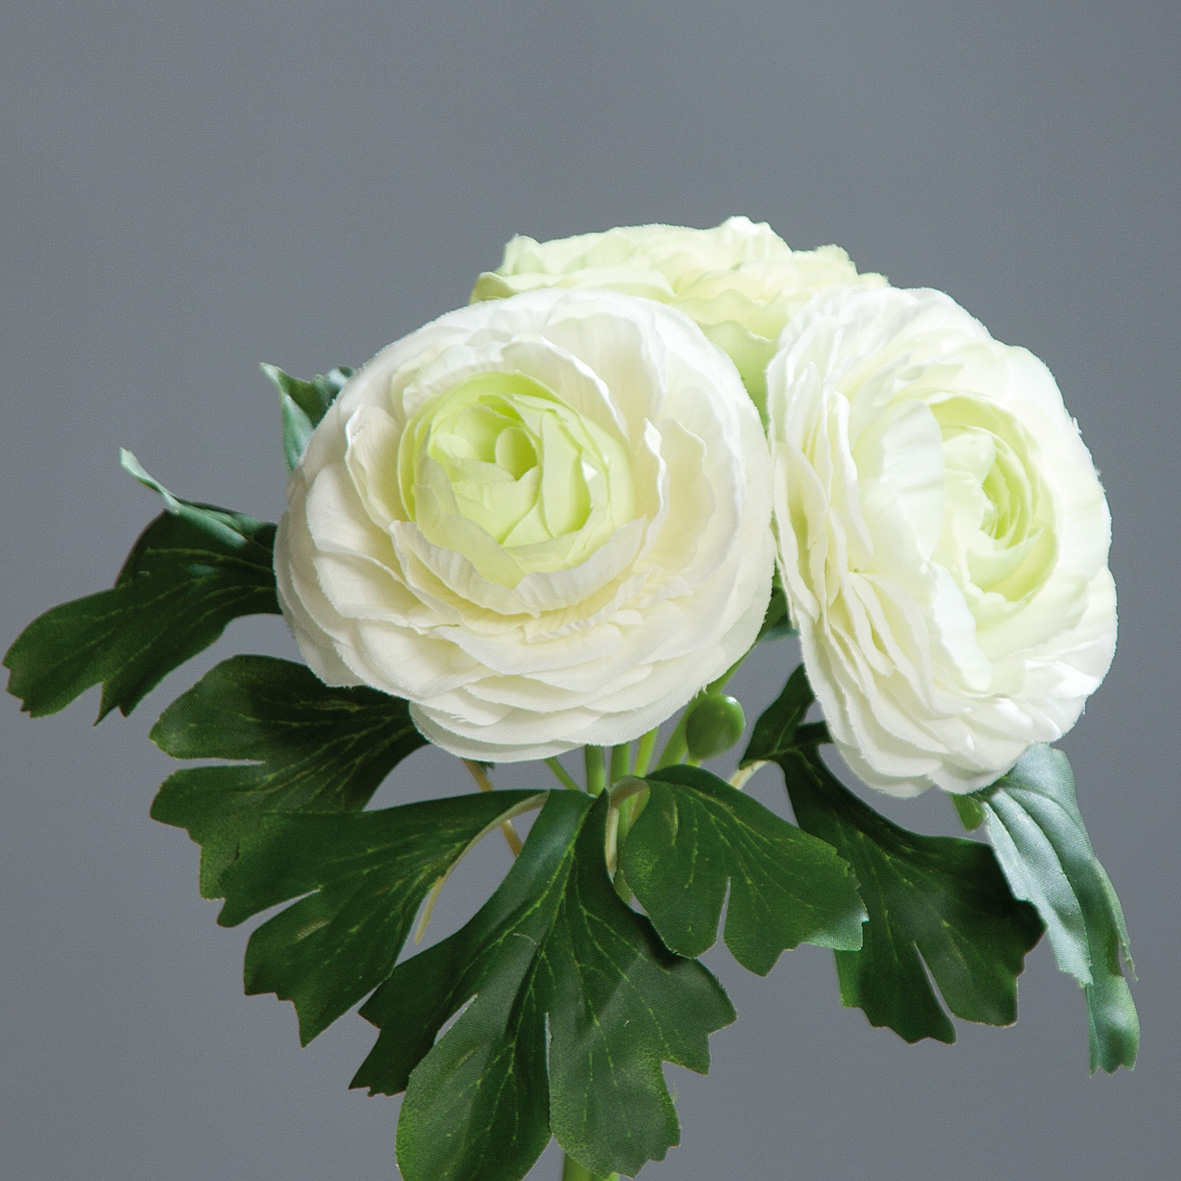 20cm Strauß Ranunkelbouquet Ranunkel weiß künstliche DP Blumen künstlicher Kunstblumen